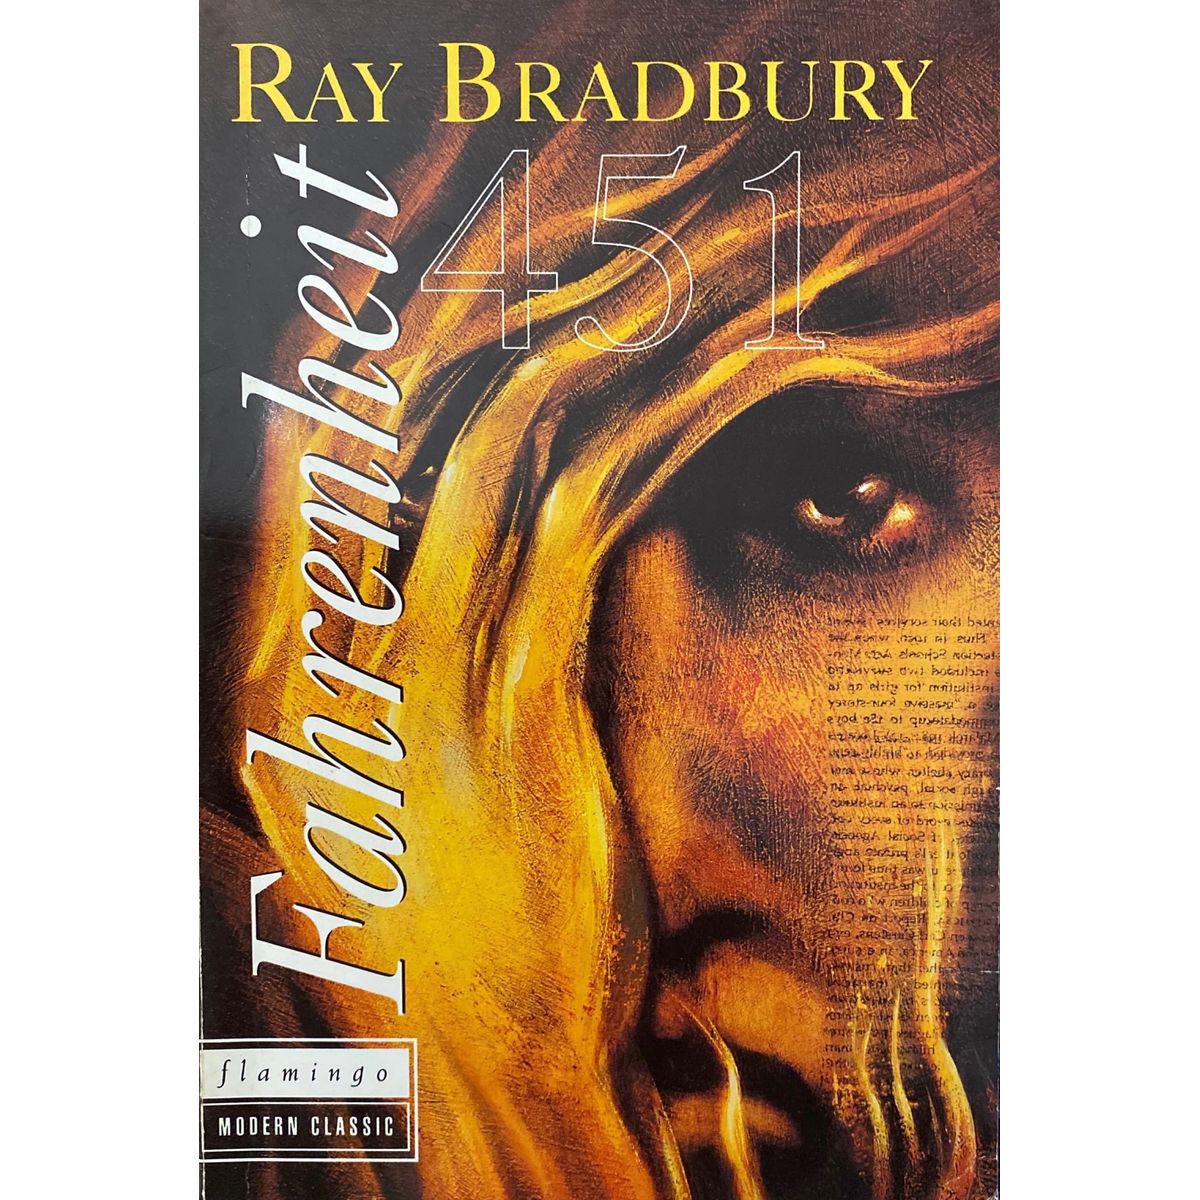 ISBN: 9780006546061 / 0006546064 - Fahrenheit 451 by Ray Bradbury [1993]